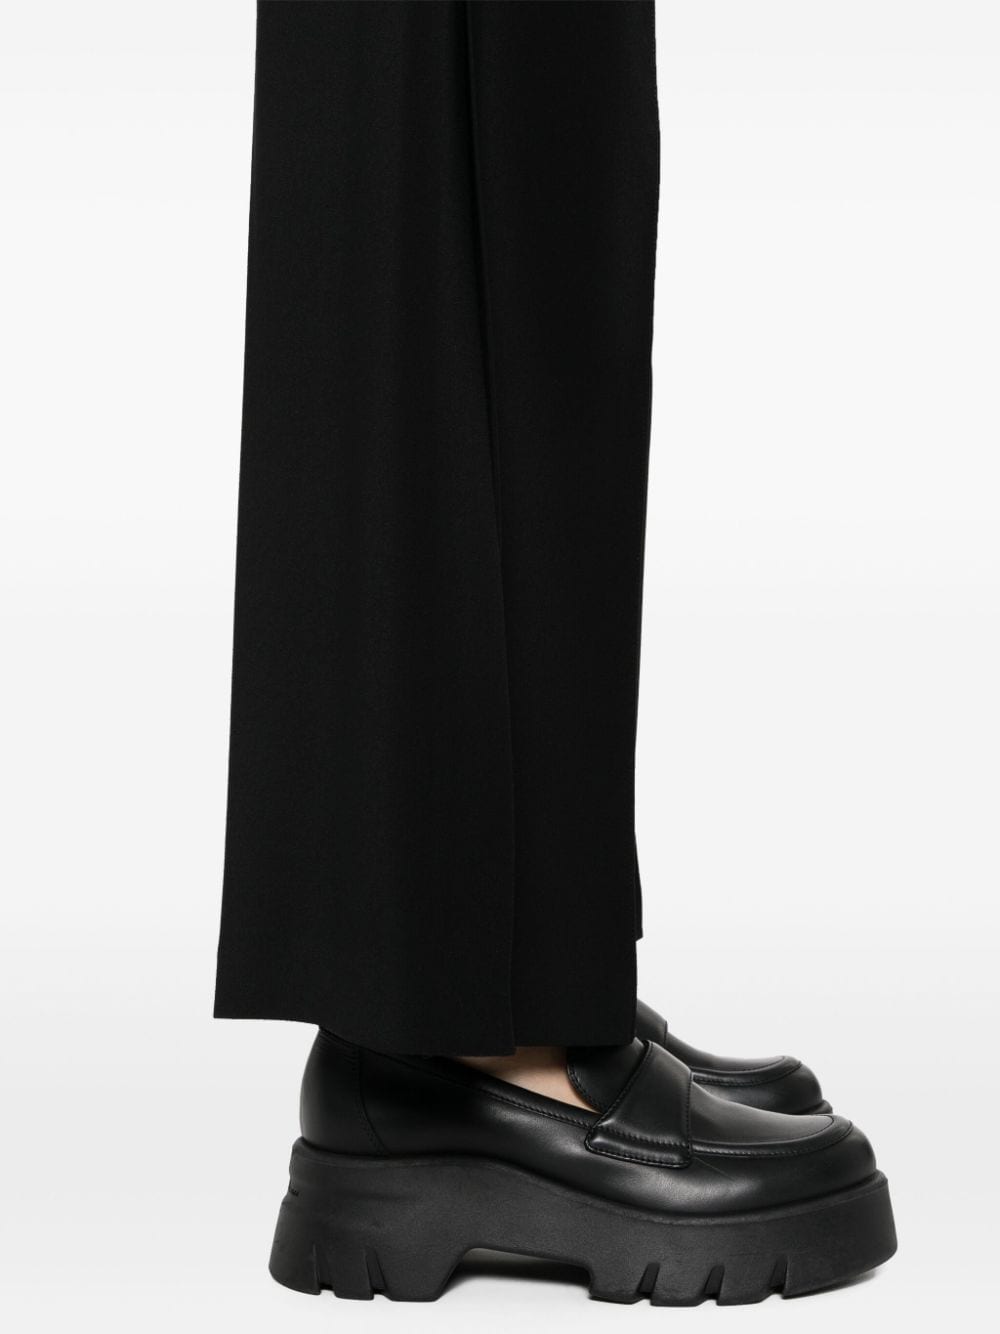 Shop Pinko Side Slits Wide-leg Trousers In Black